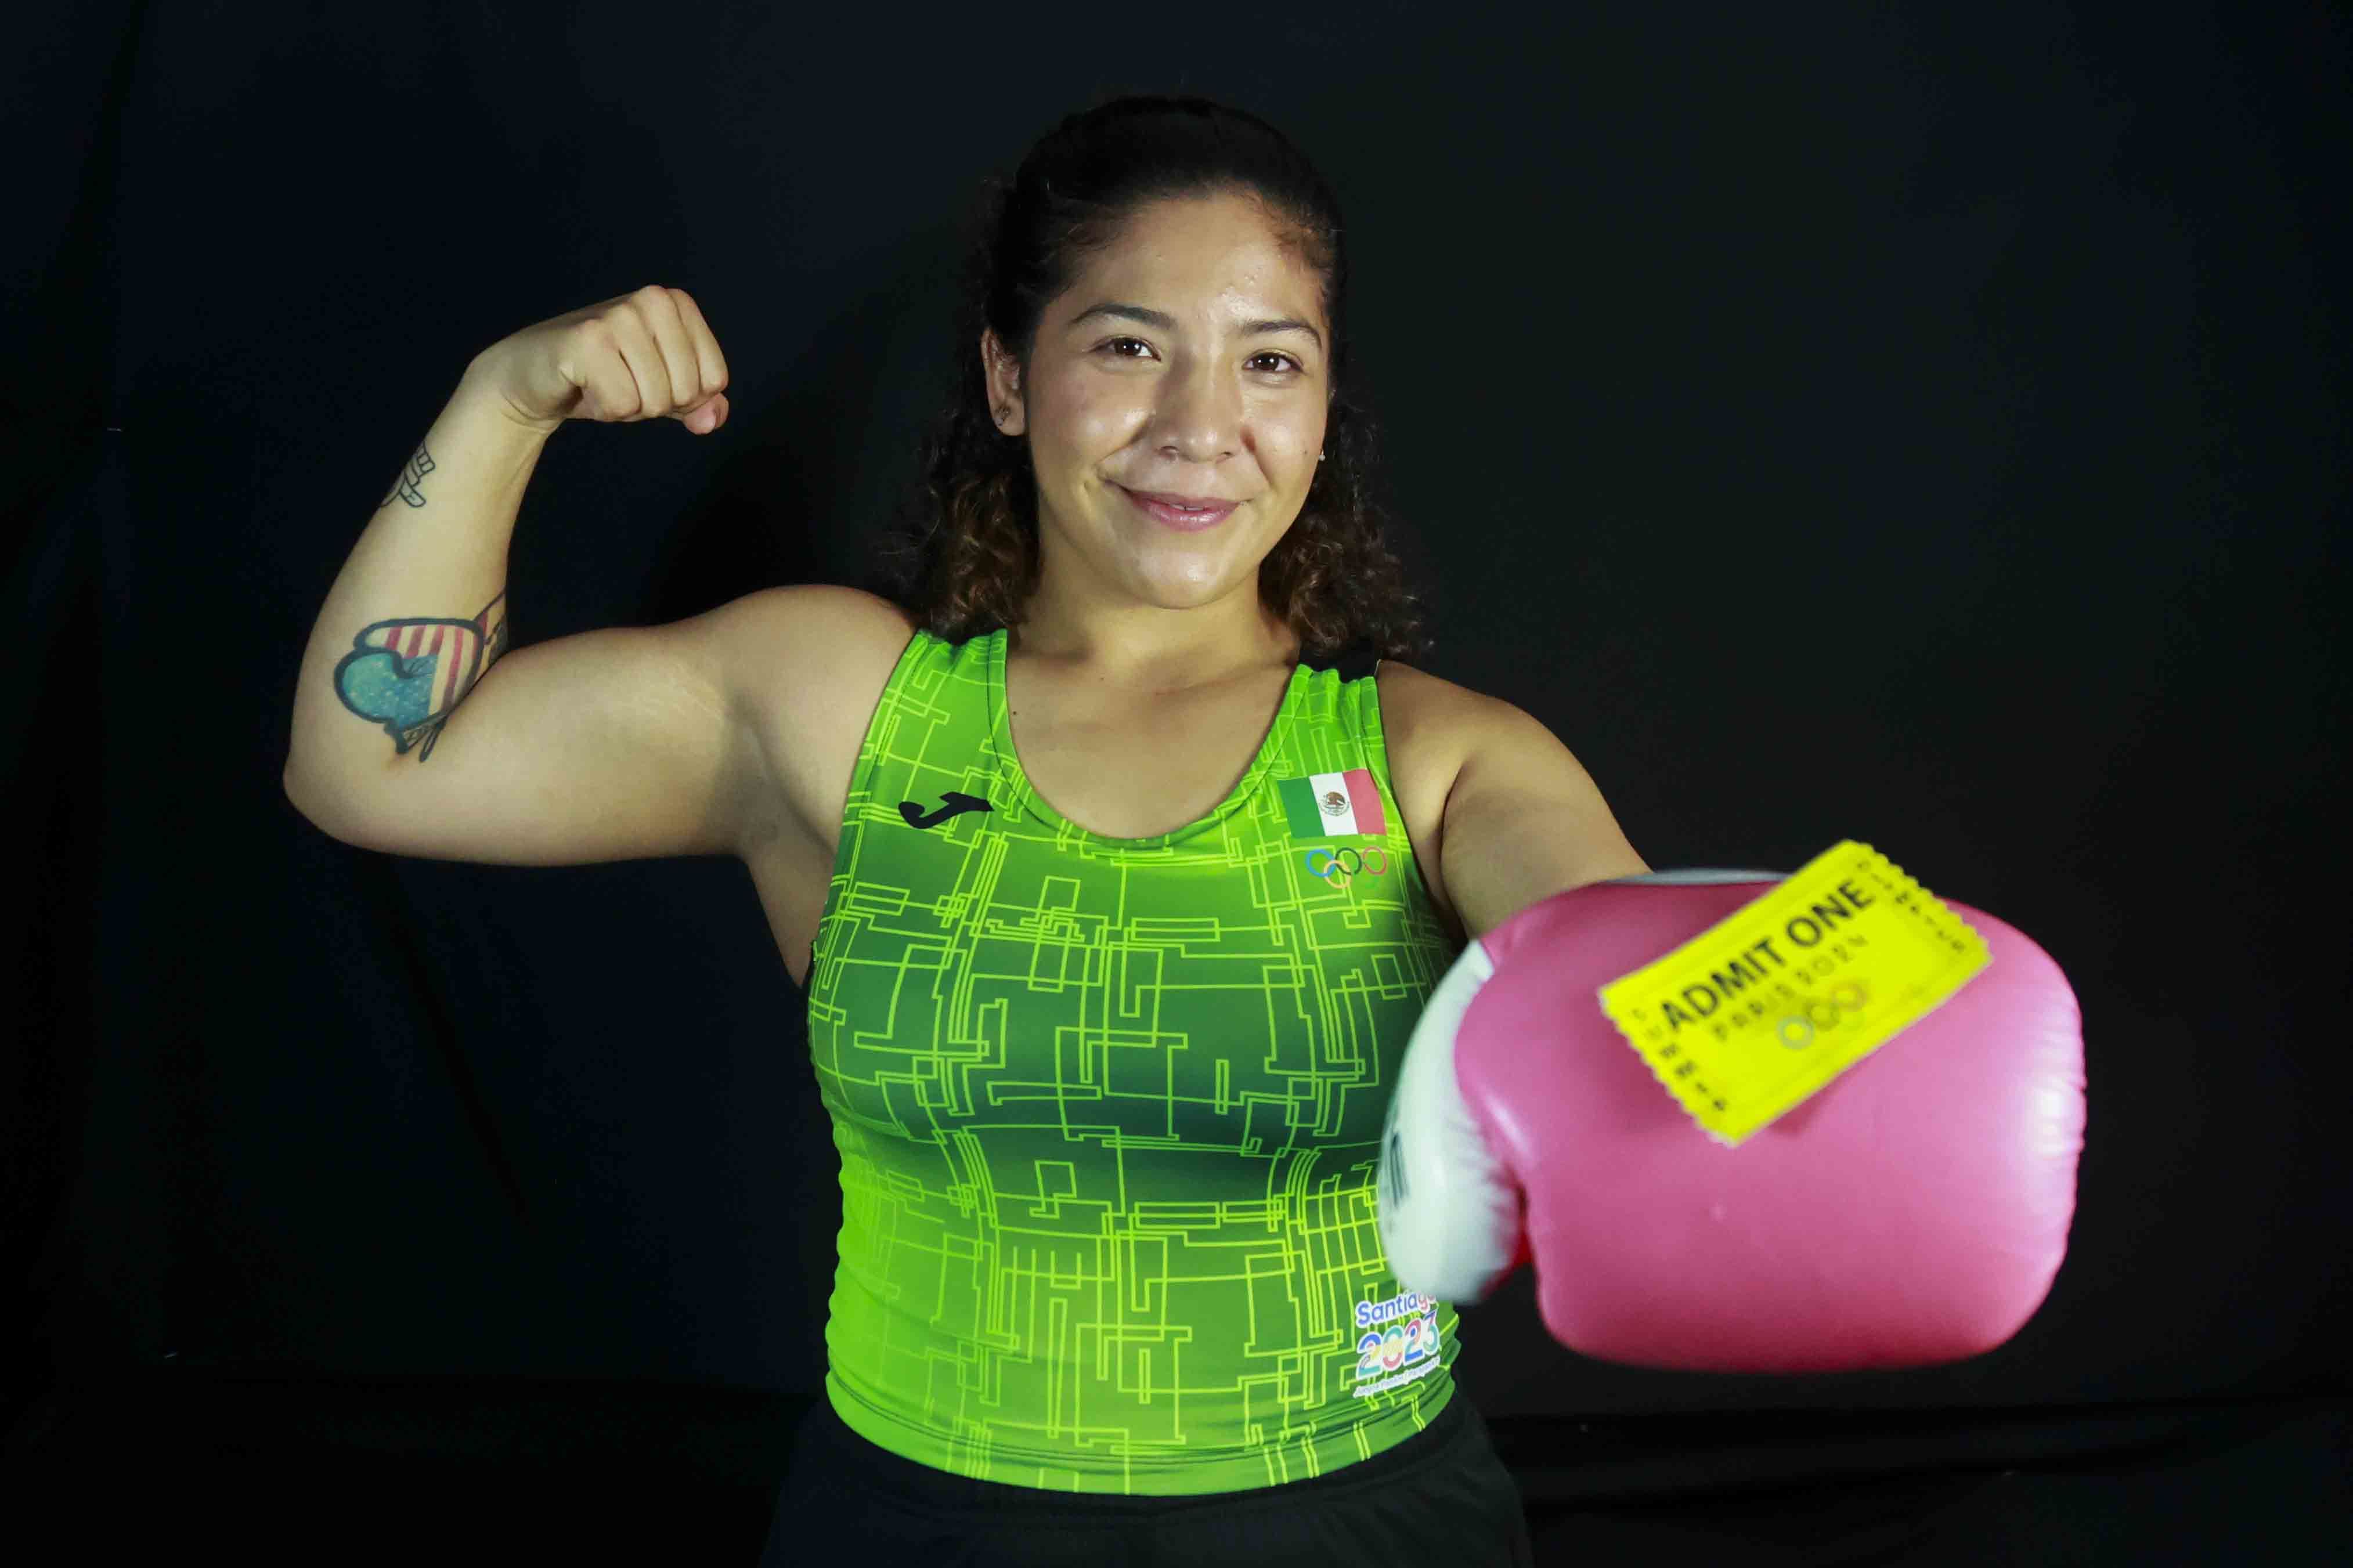 “La pelea de mi vida es por una medalla olímpica”: Citlalli Ortiz